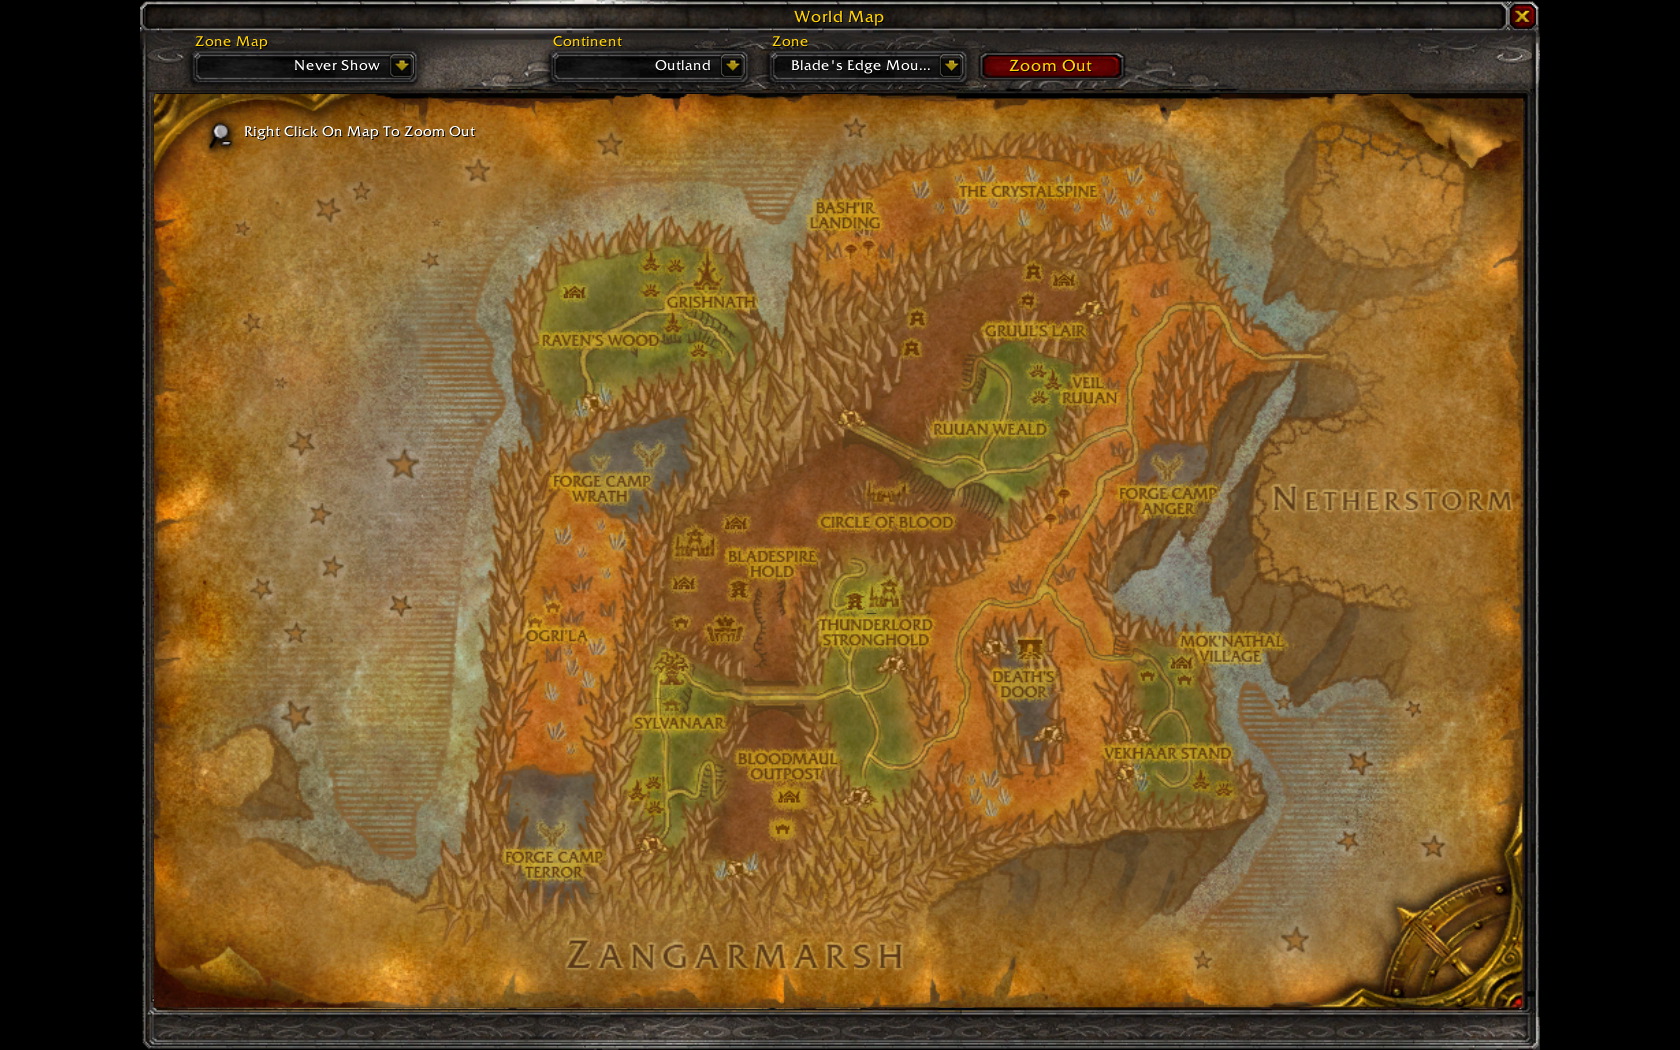 Как попасть в запределье 3.3 5. Карта World of Warcraft Burning Crusade. Запределье варкрафт карта. Wow 3.3.5 карта Запределья. Запределье 3.3.5.